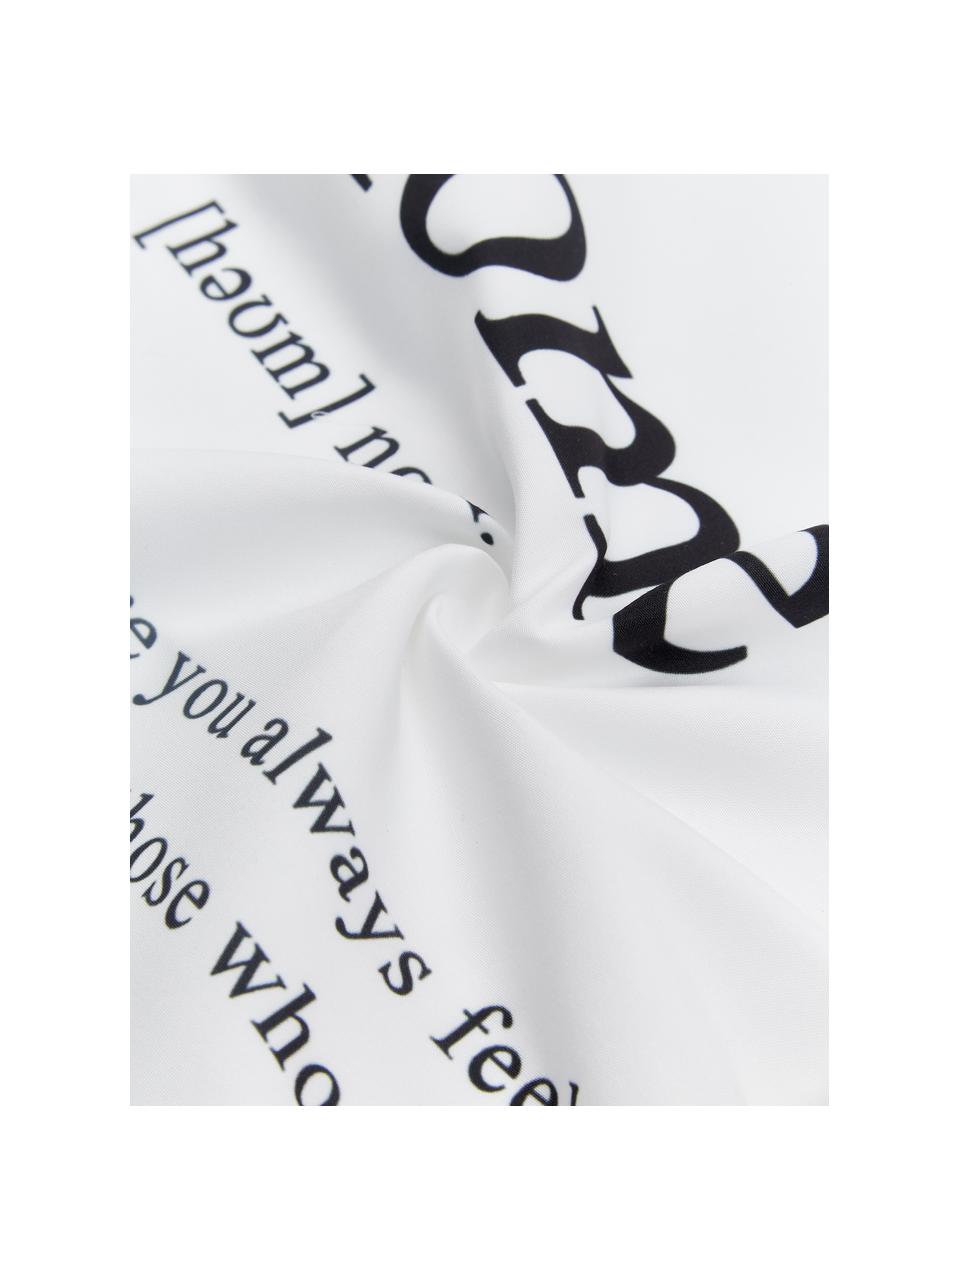 Kissenhülle Home in Schwarz/Weiß mit Schriftzug, 100% Polyester, Schwarz, Weiß, 45 x 45 cm